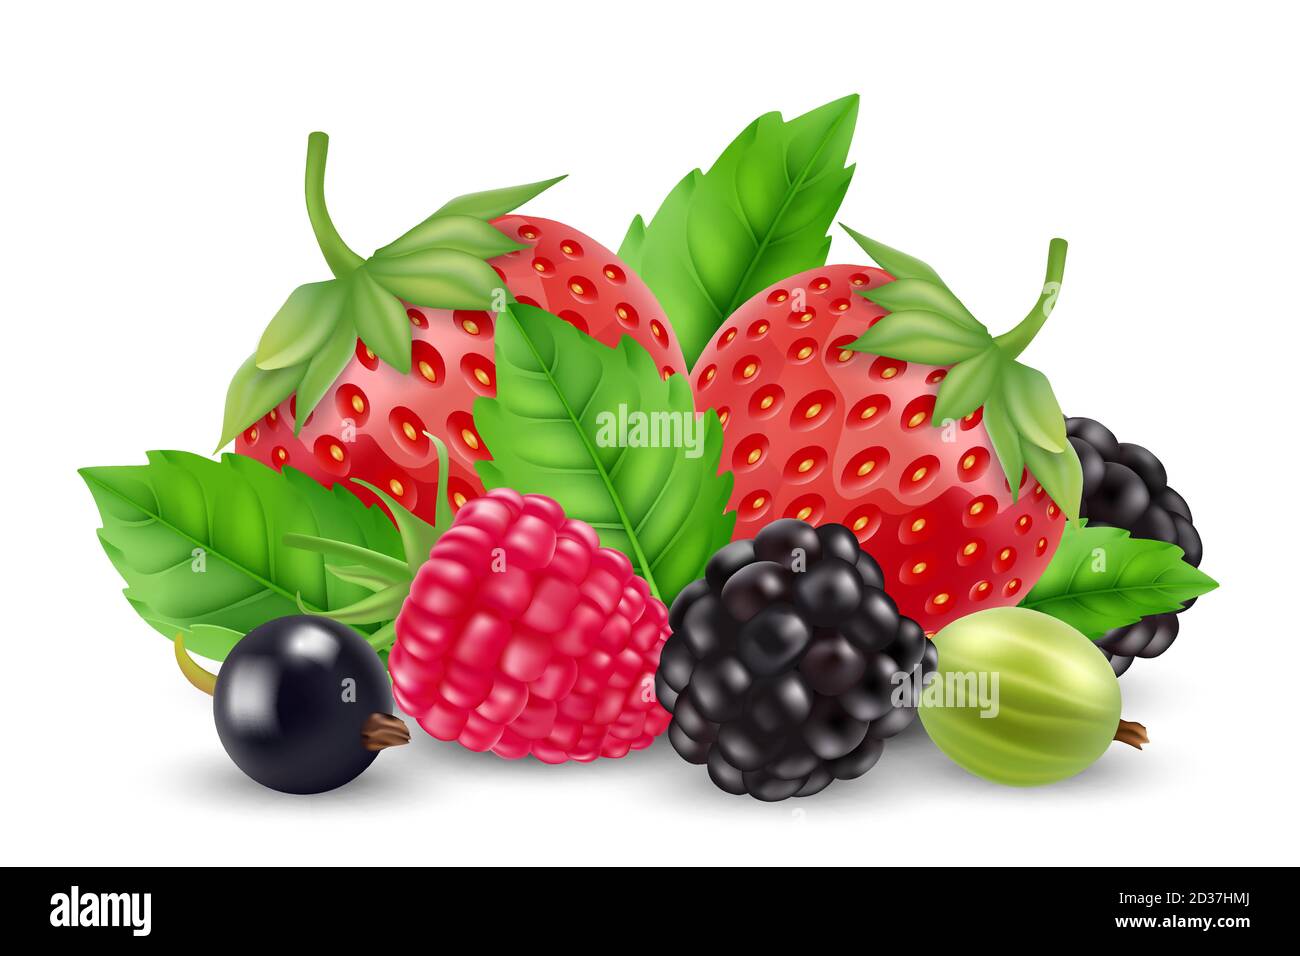 Realistische Beeren Vektor. Erdbeere, Himbeere, Gänselbeere, Brombeere isoliert auf weißem Hintergrund Stock Vektor